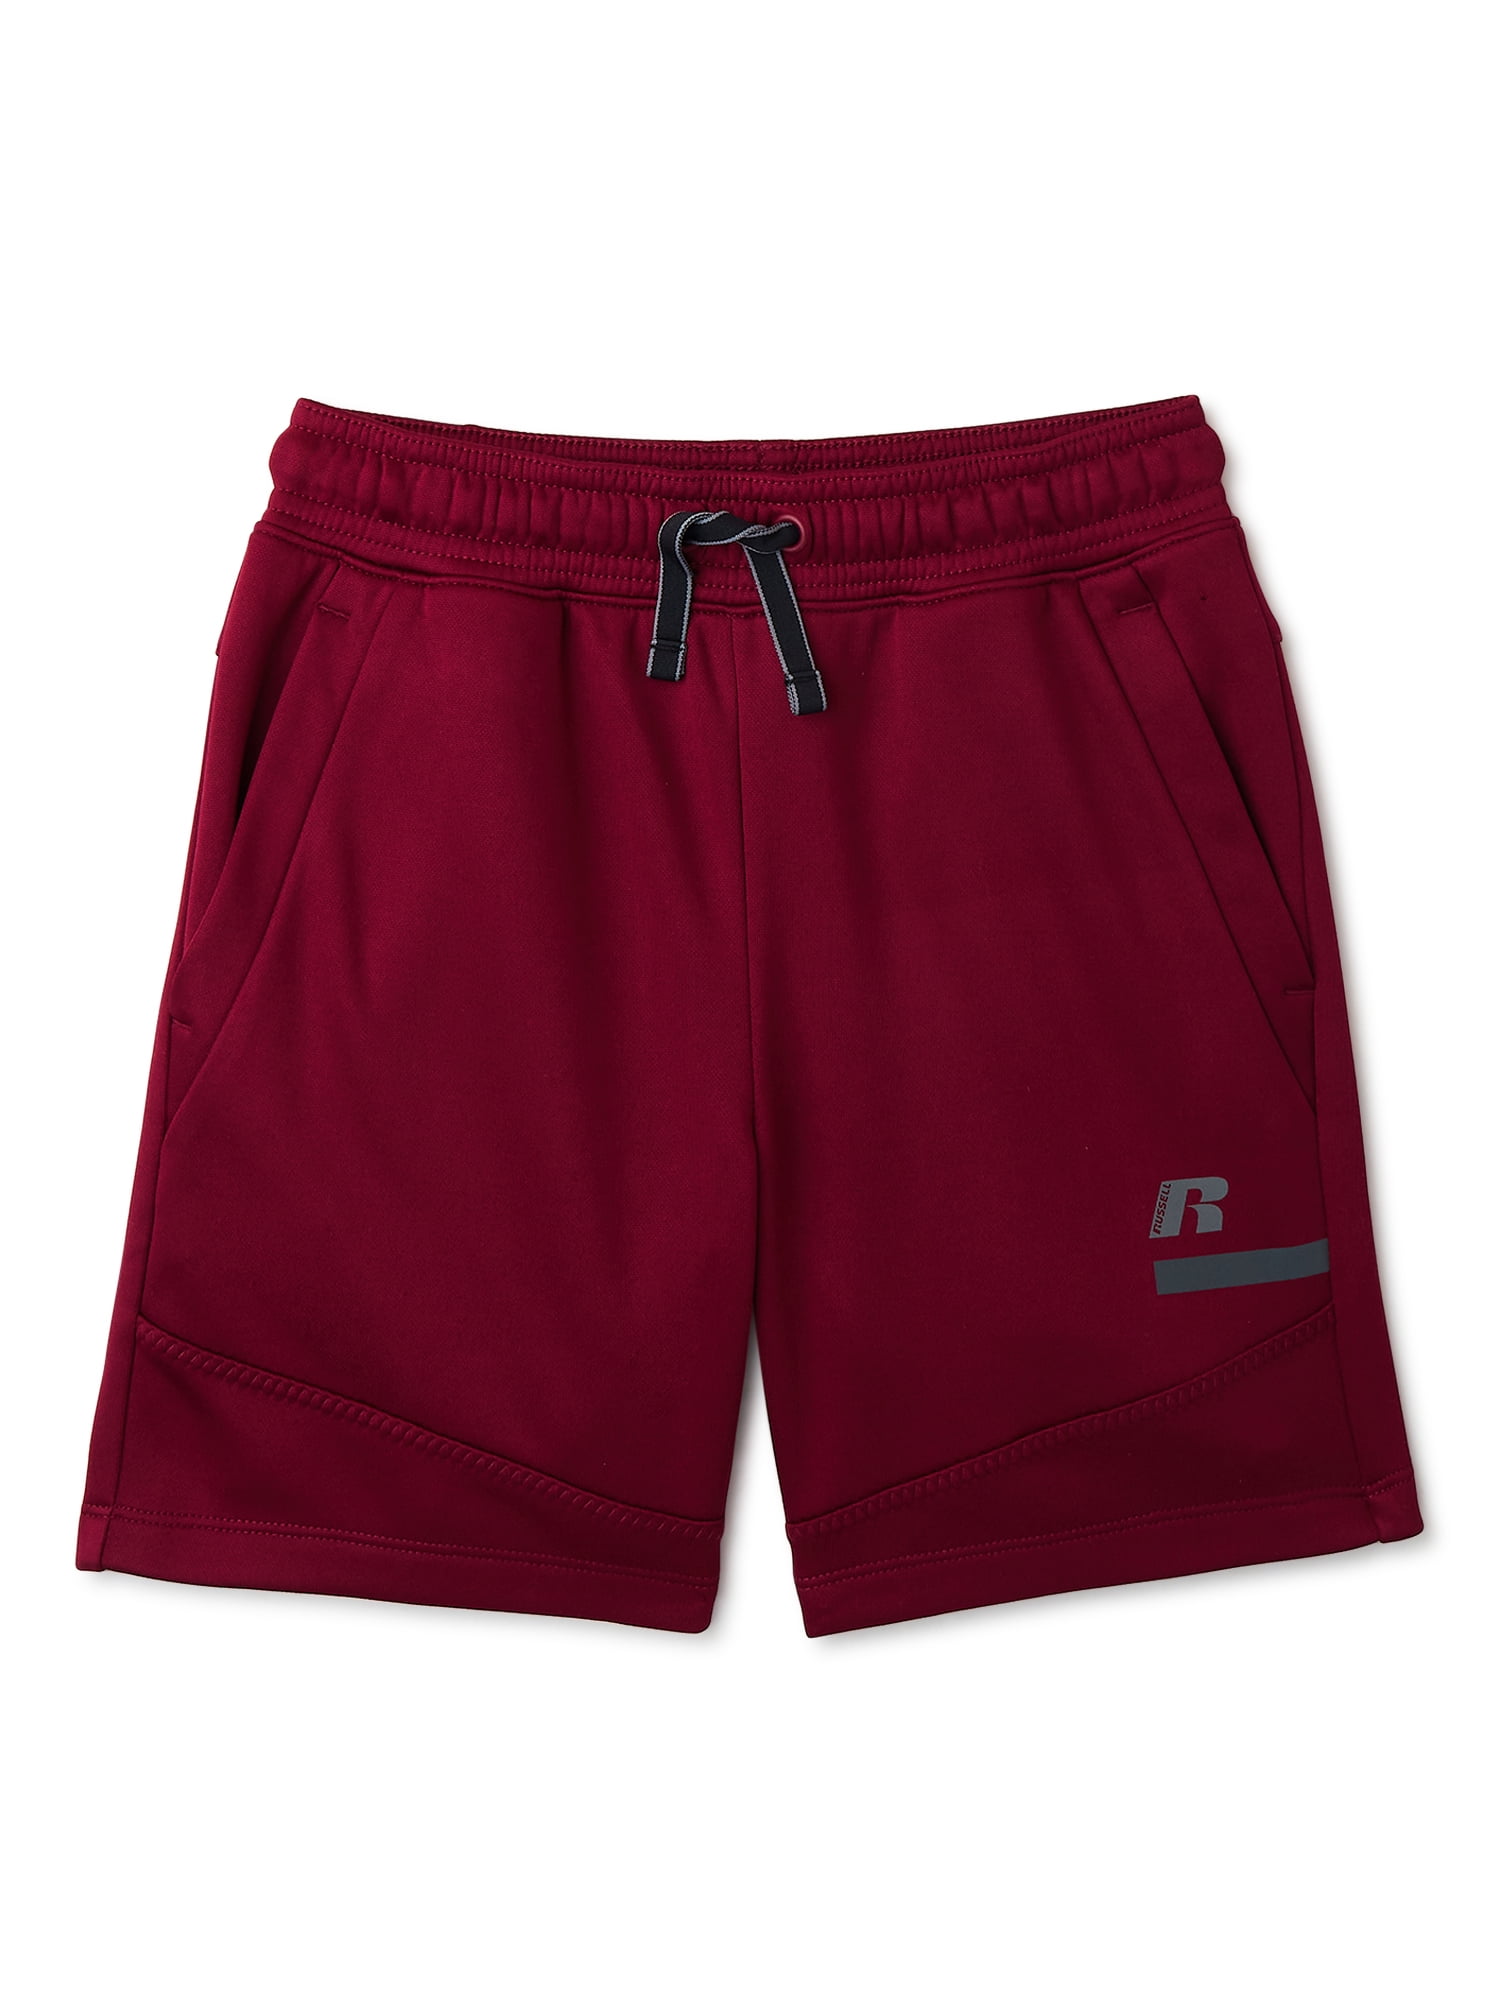 Russell Boys Tech Fleece Shorts, Sizes 4-18 - Walmart.com